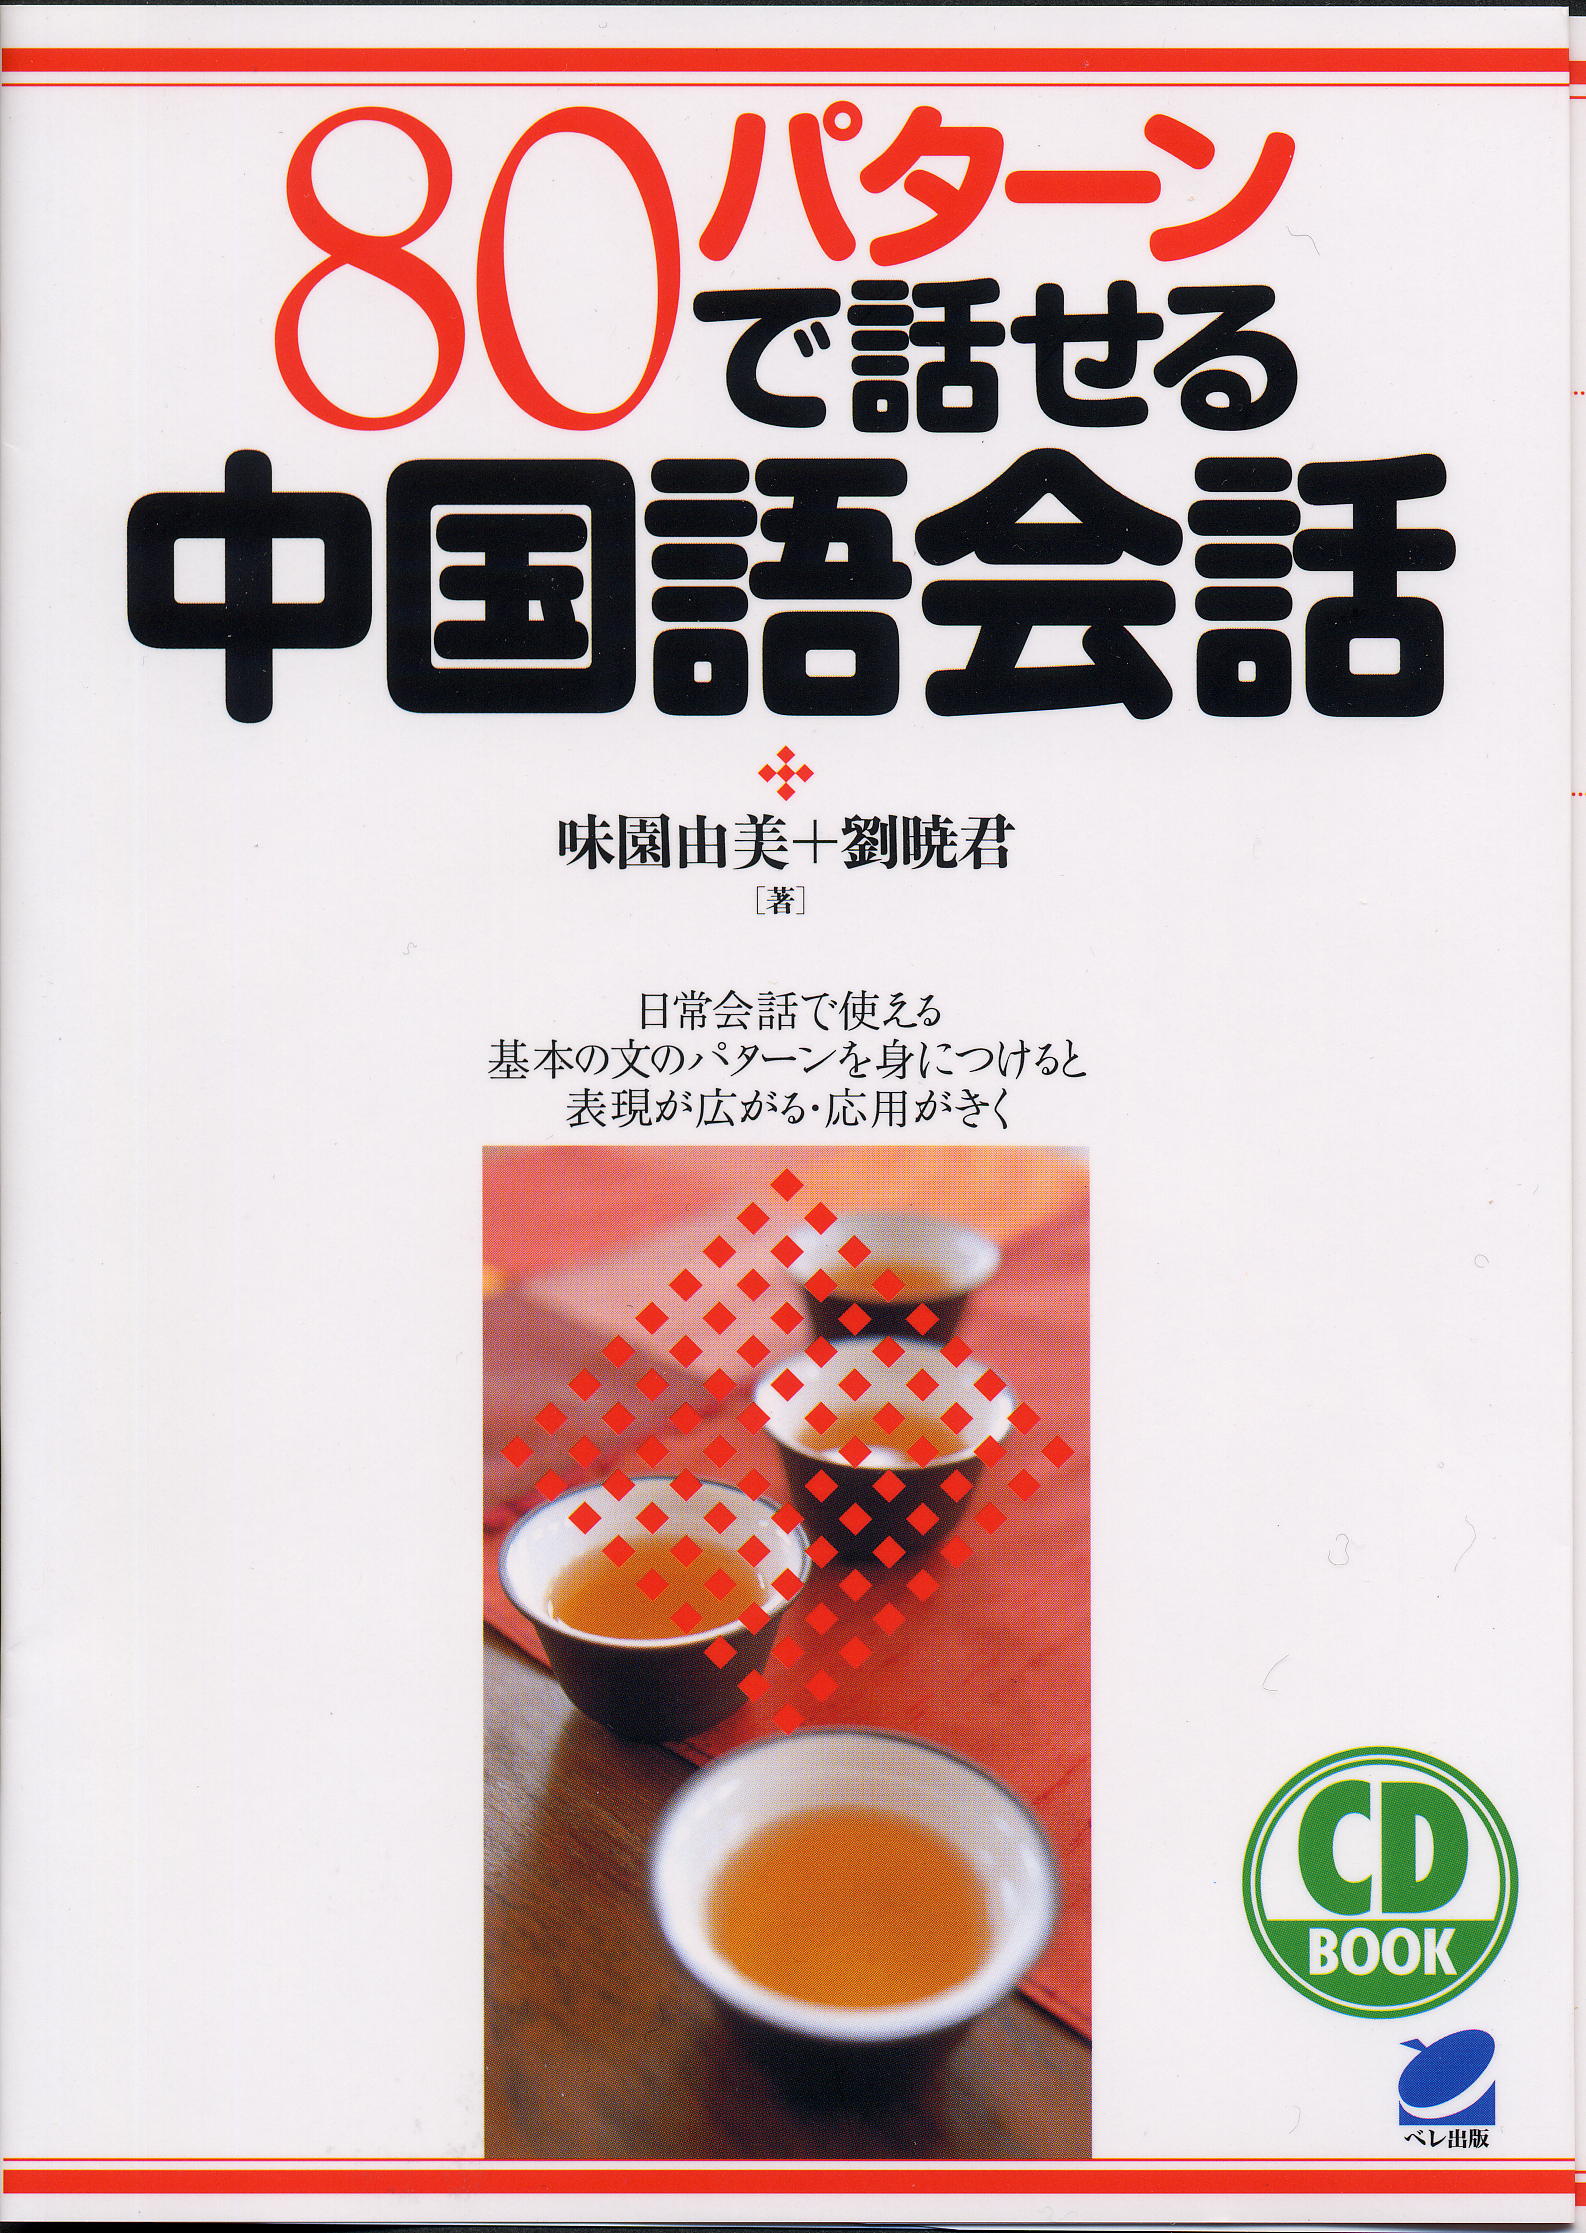 80パターンで話せる中国語会話 CD BOOK - いつも、学ぶ人の近くに 